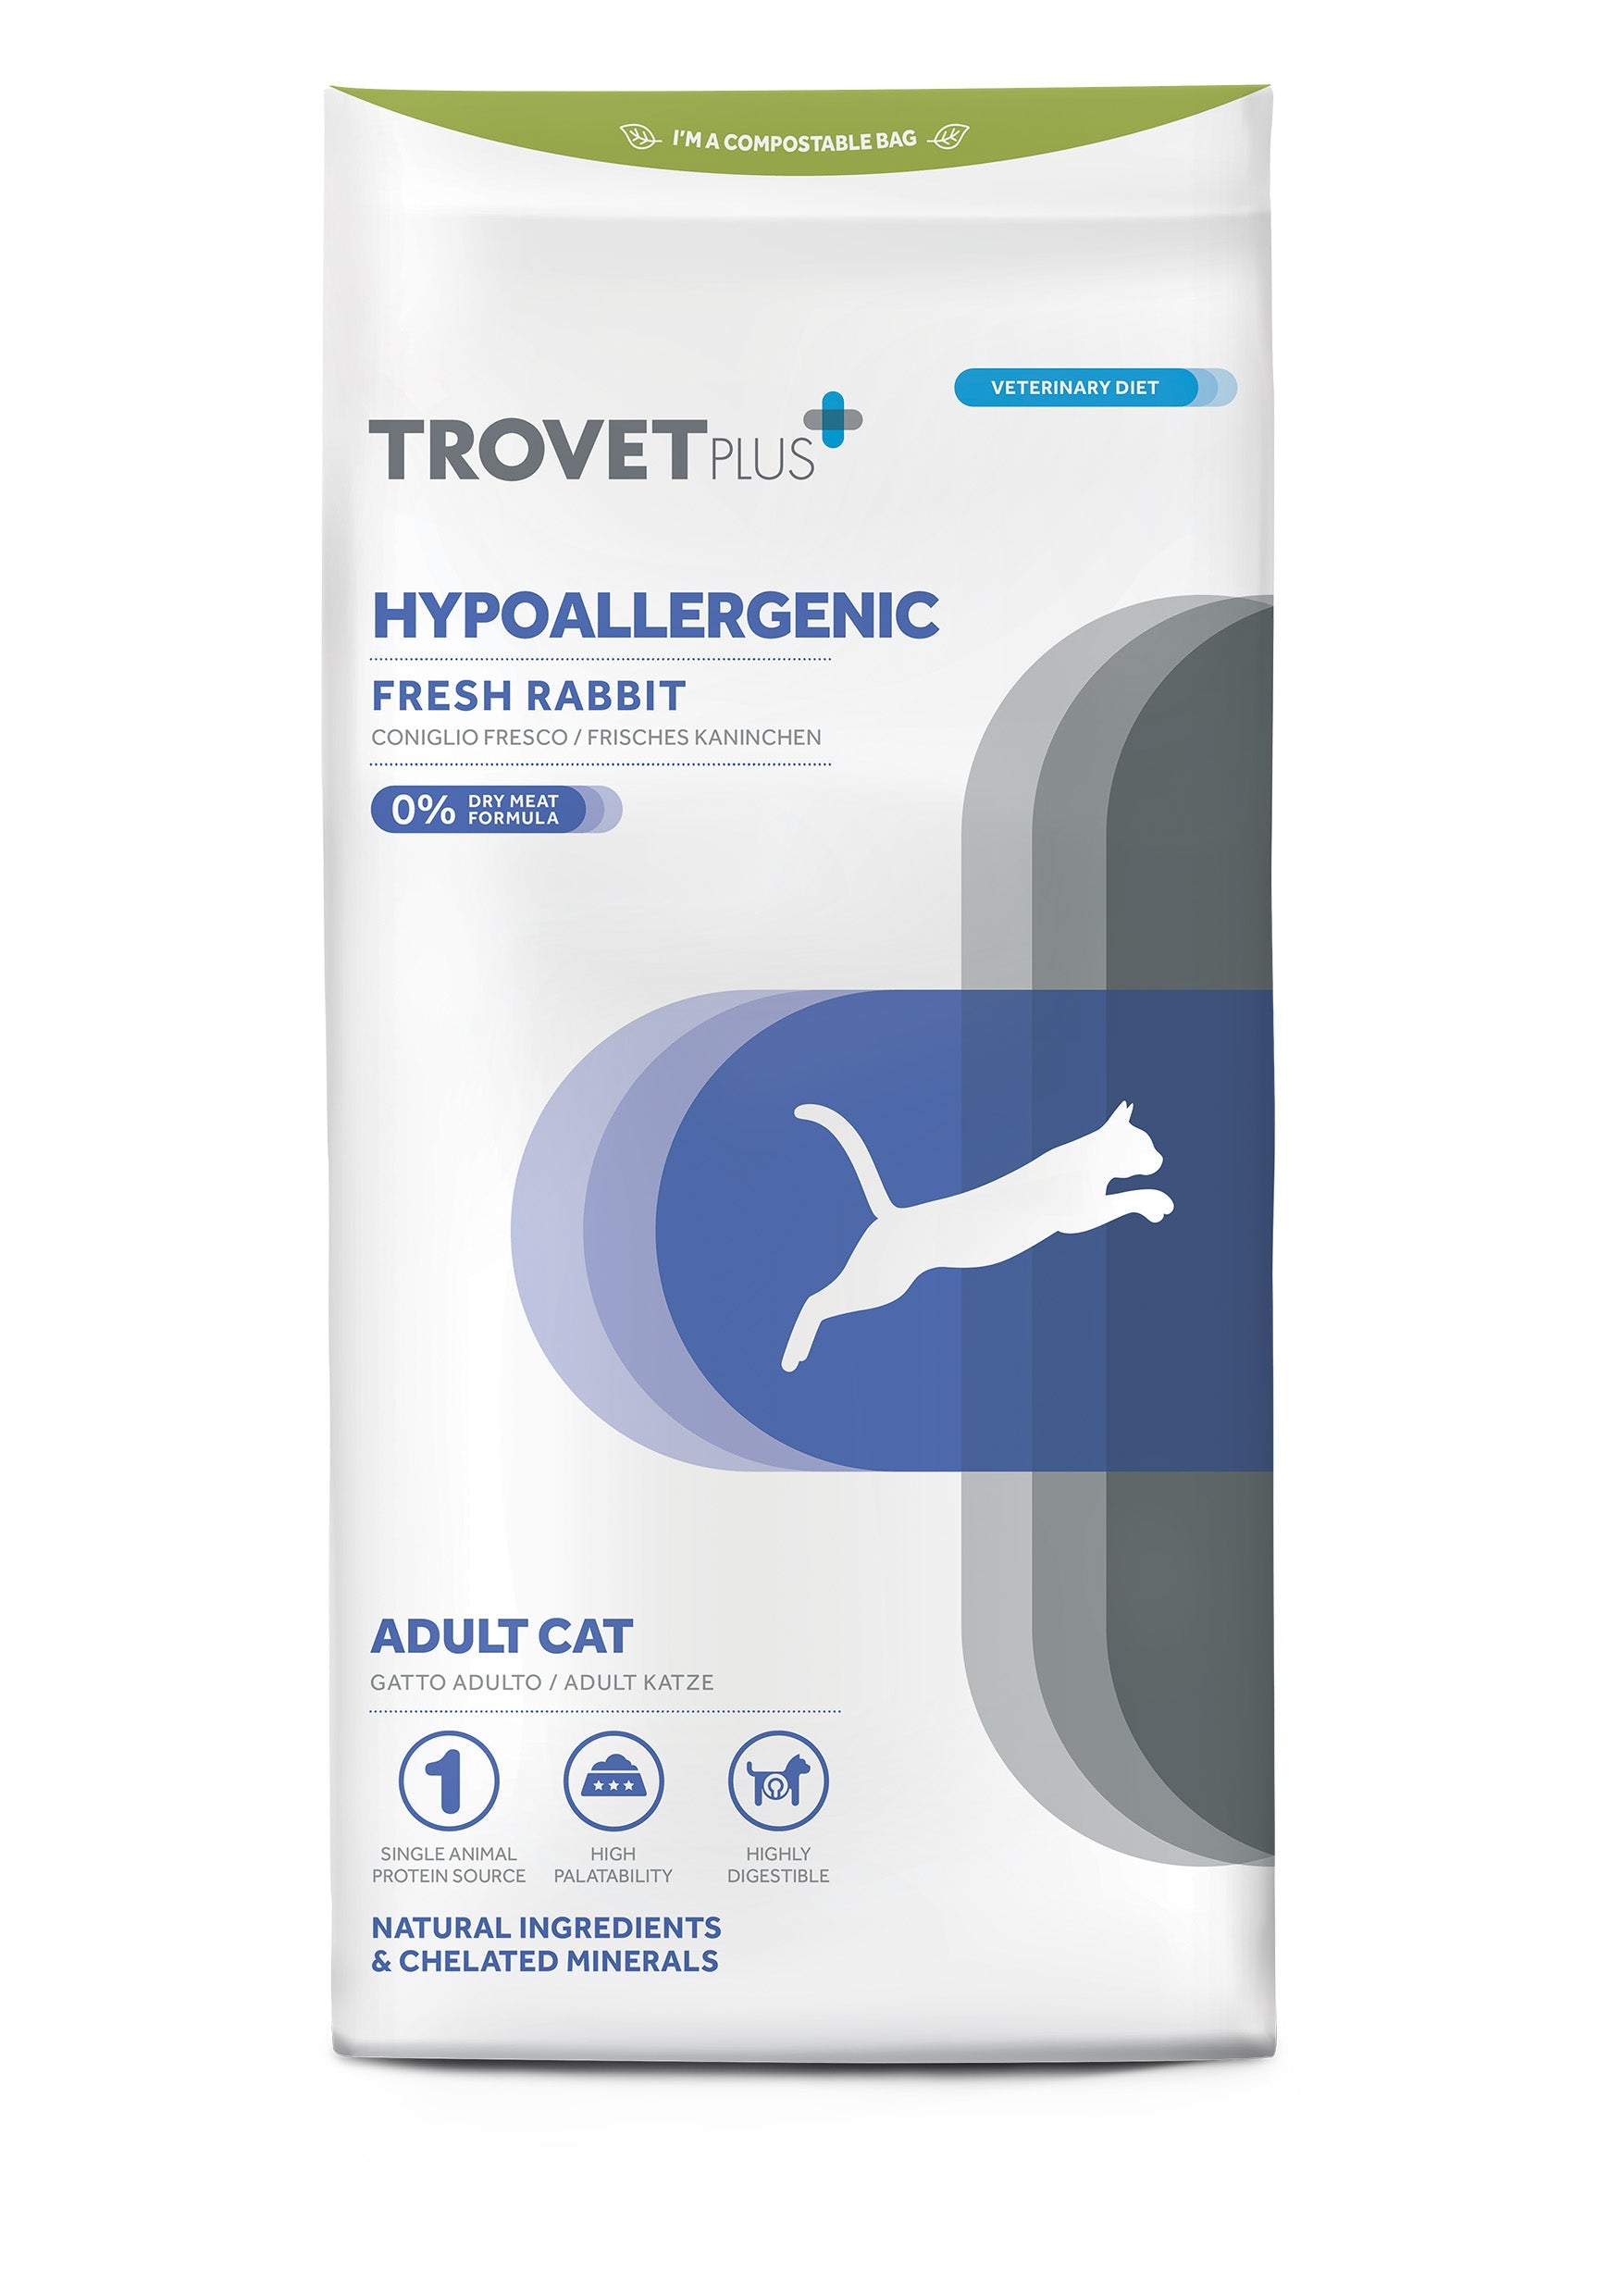 Hypoallergenic -  Frisches Kaninchenfleisch - Erwachsene Katze